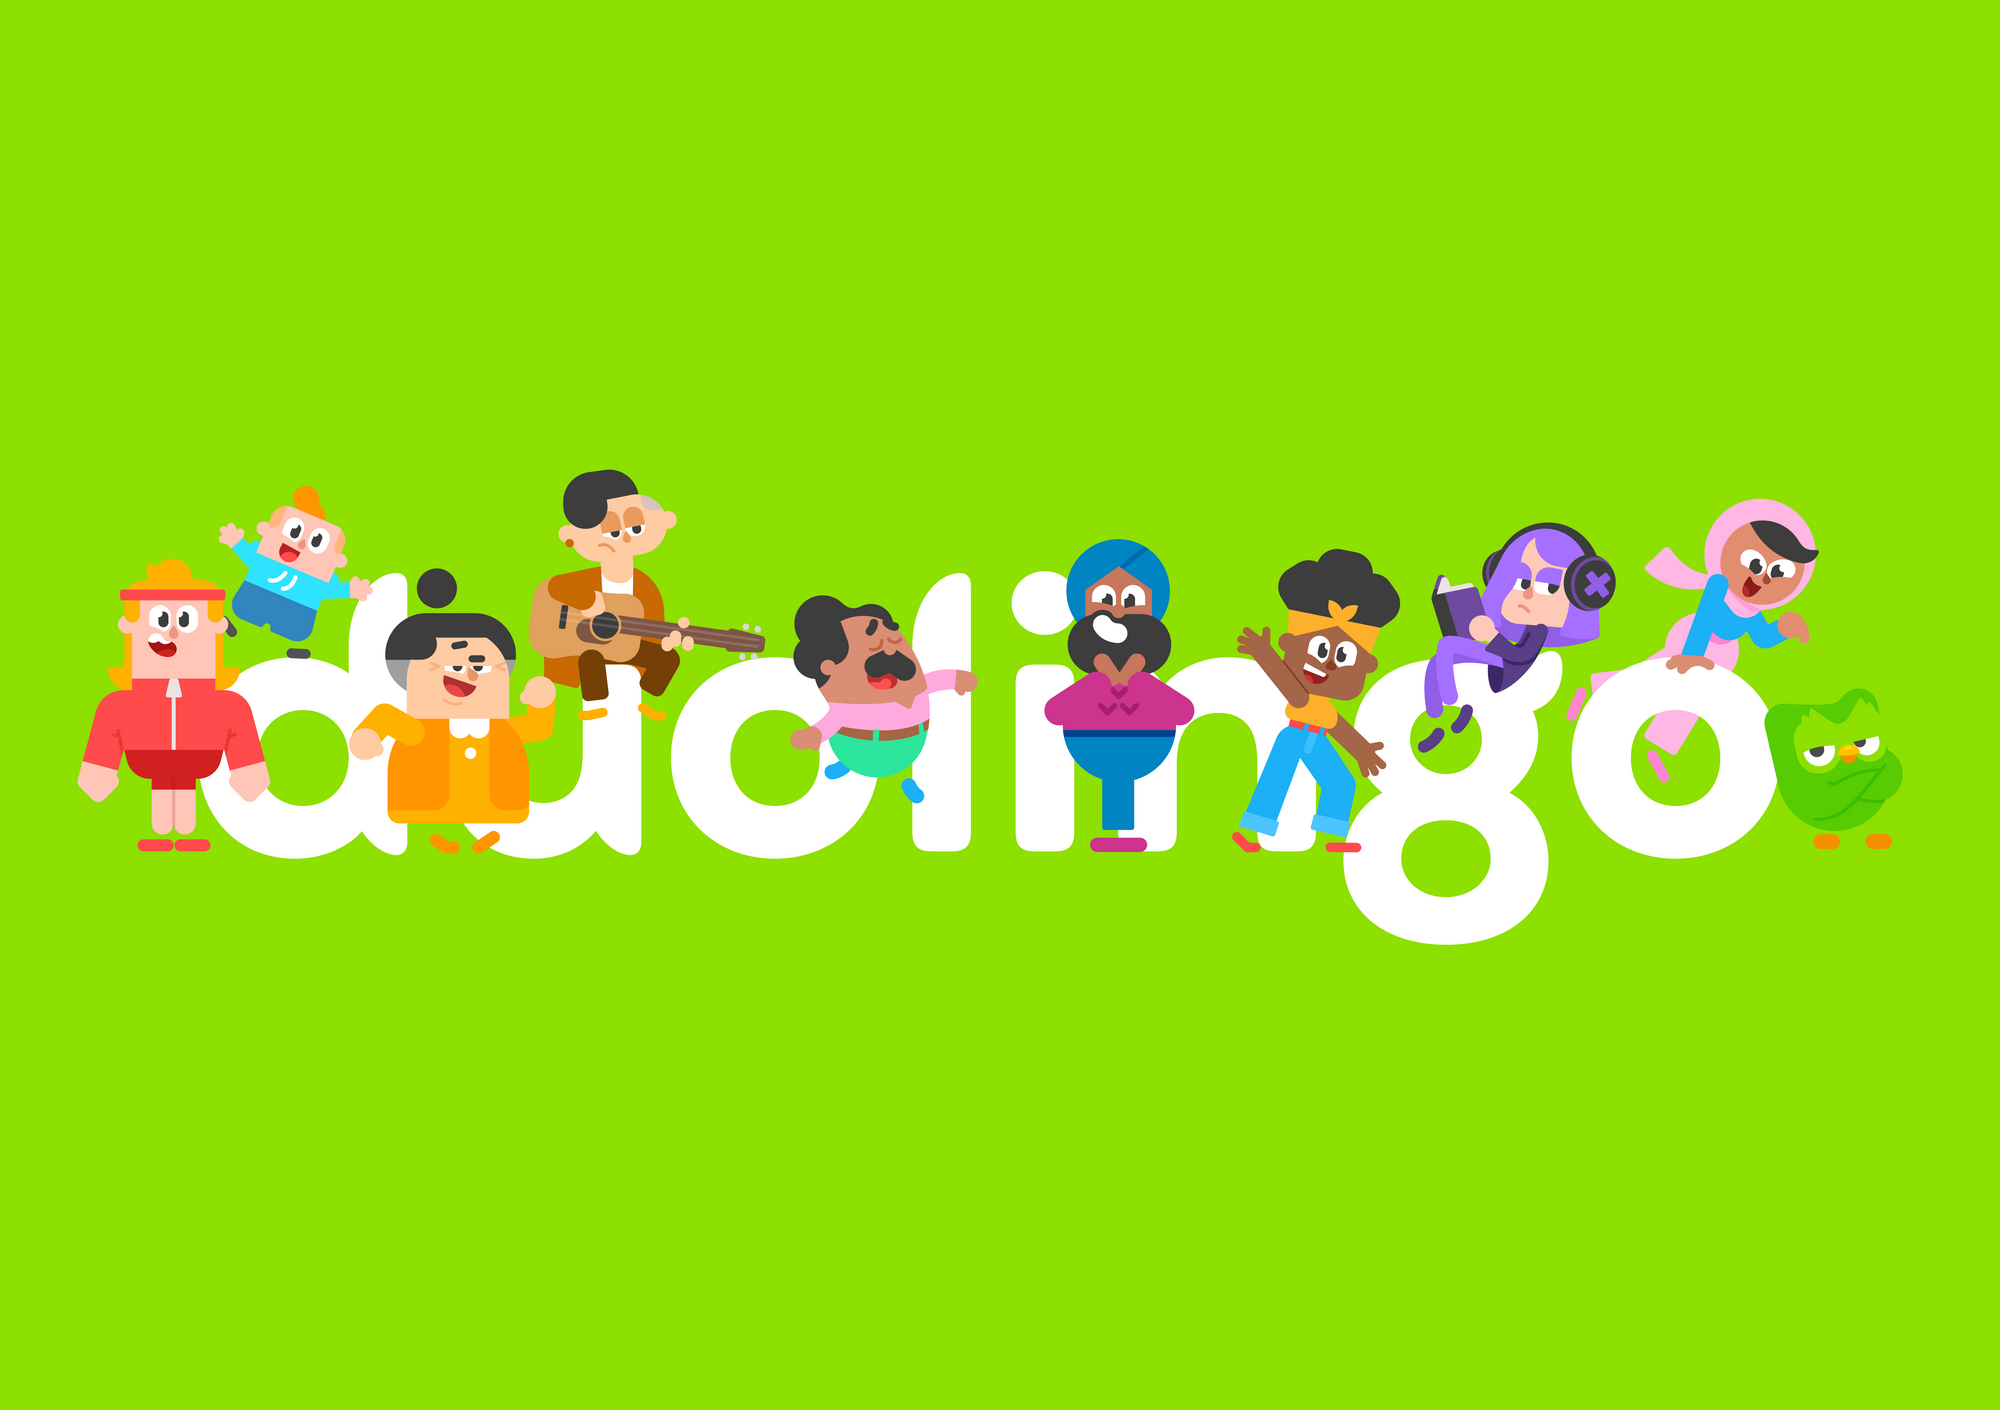 Duolingo Character Wordmark